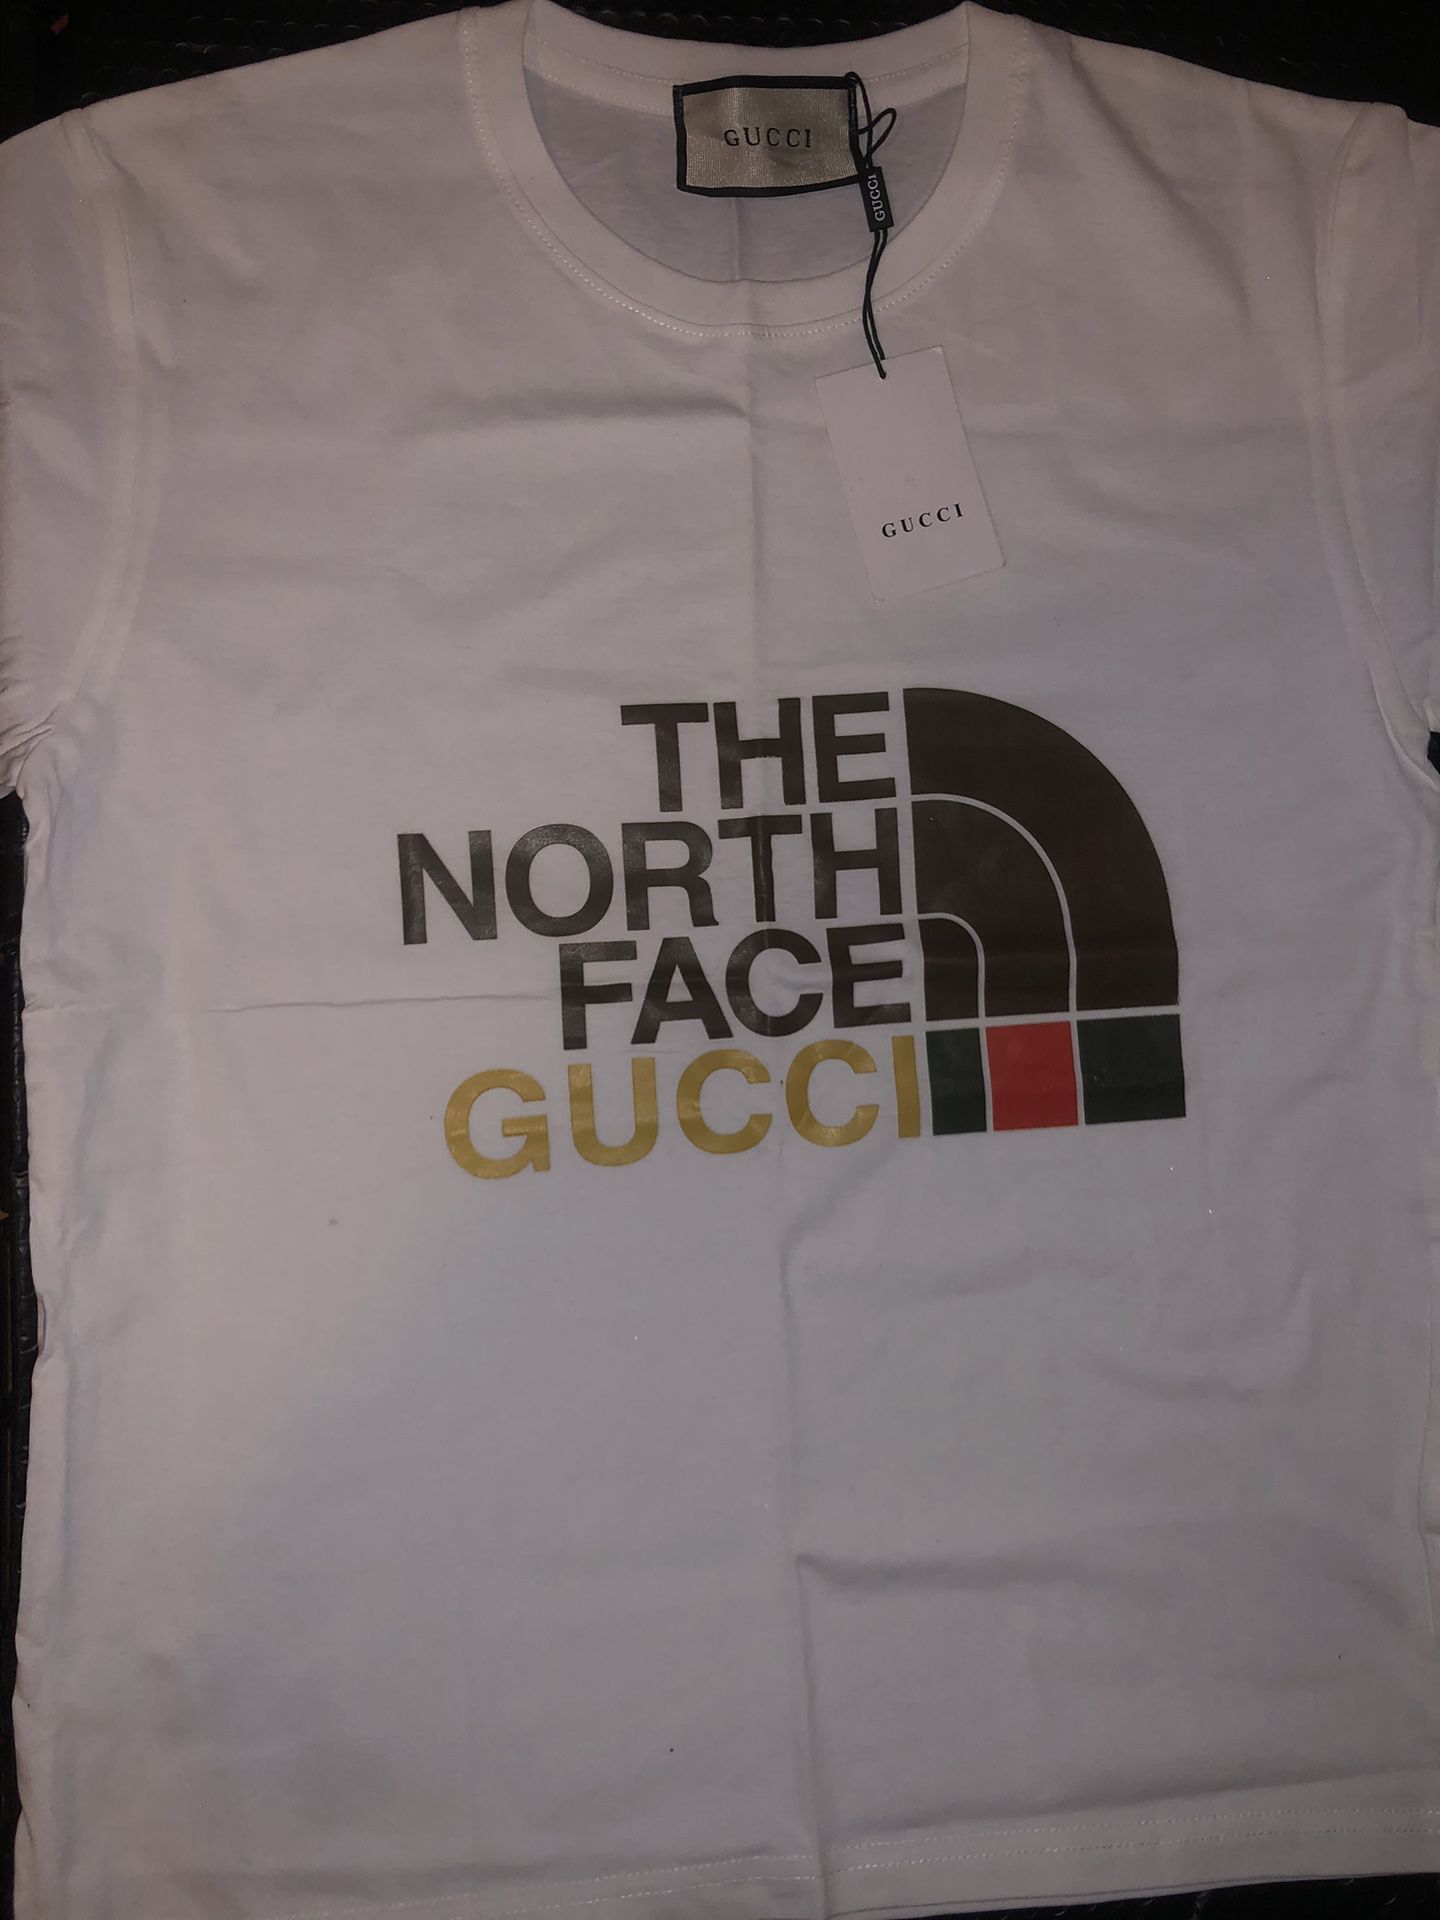 North face Gucci Shirt